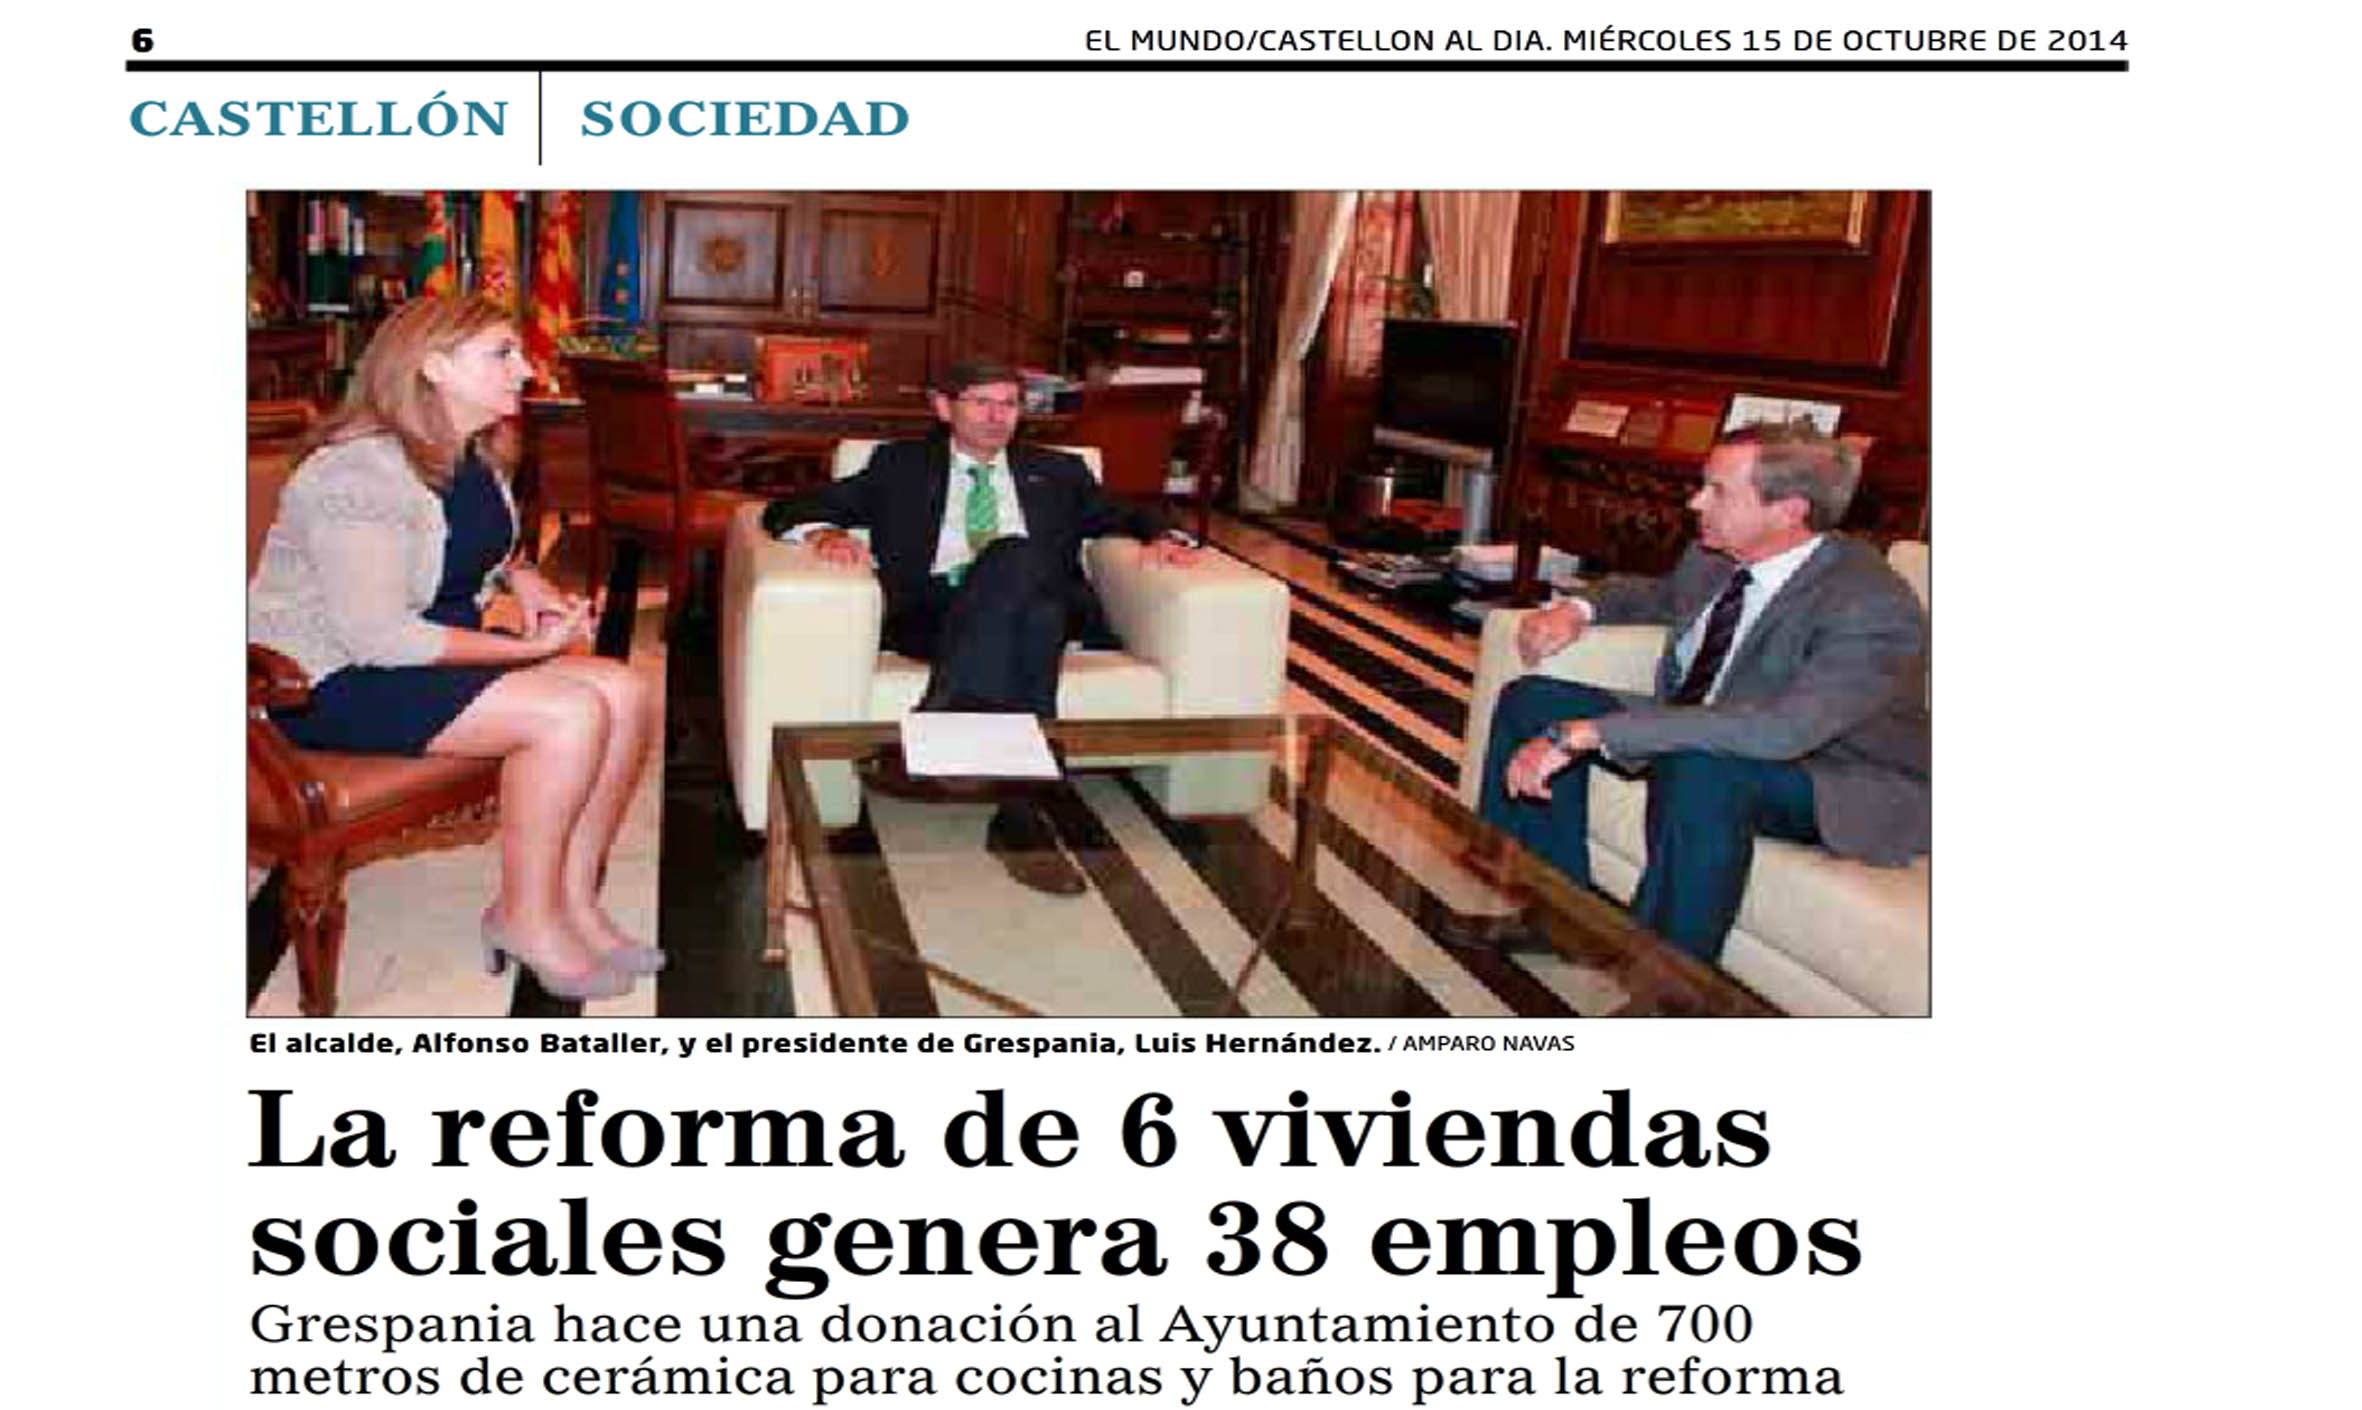 EL MUNDO SOCIEDAD 15 Oct 2014